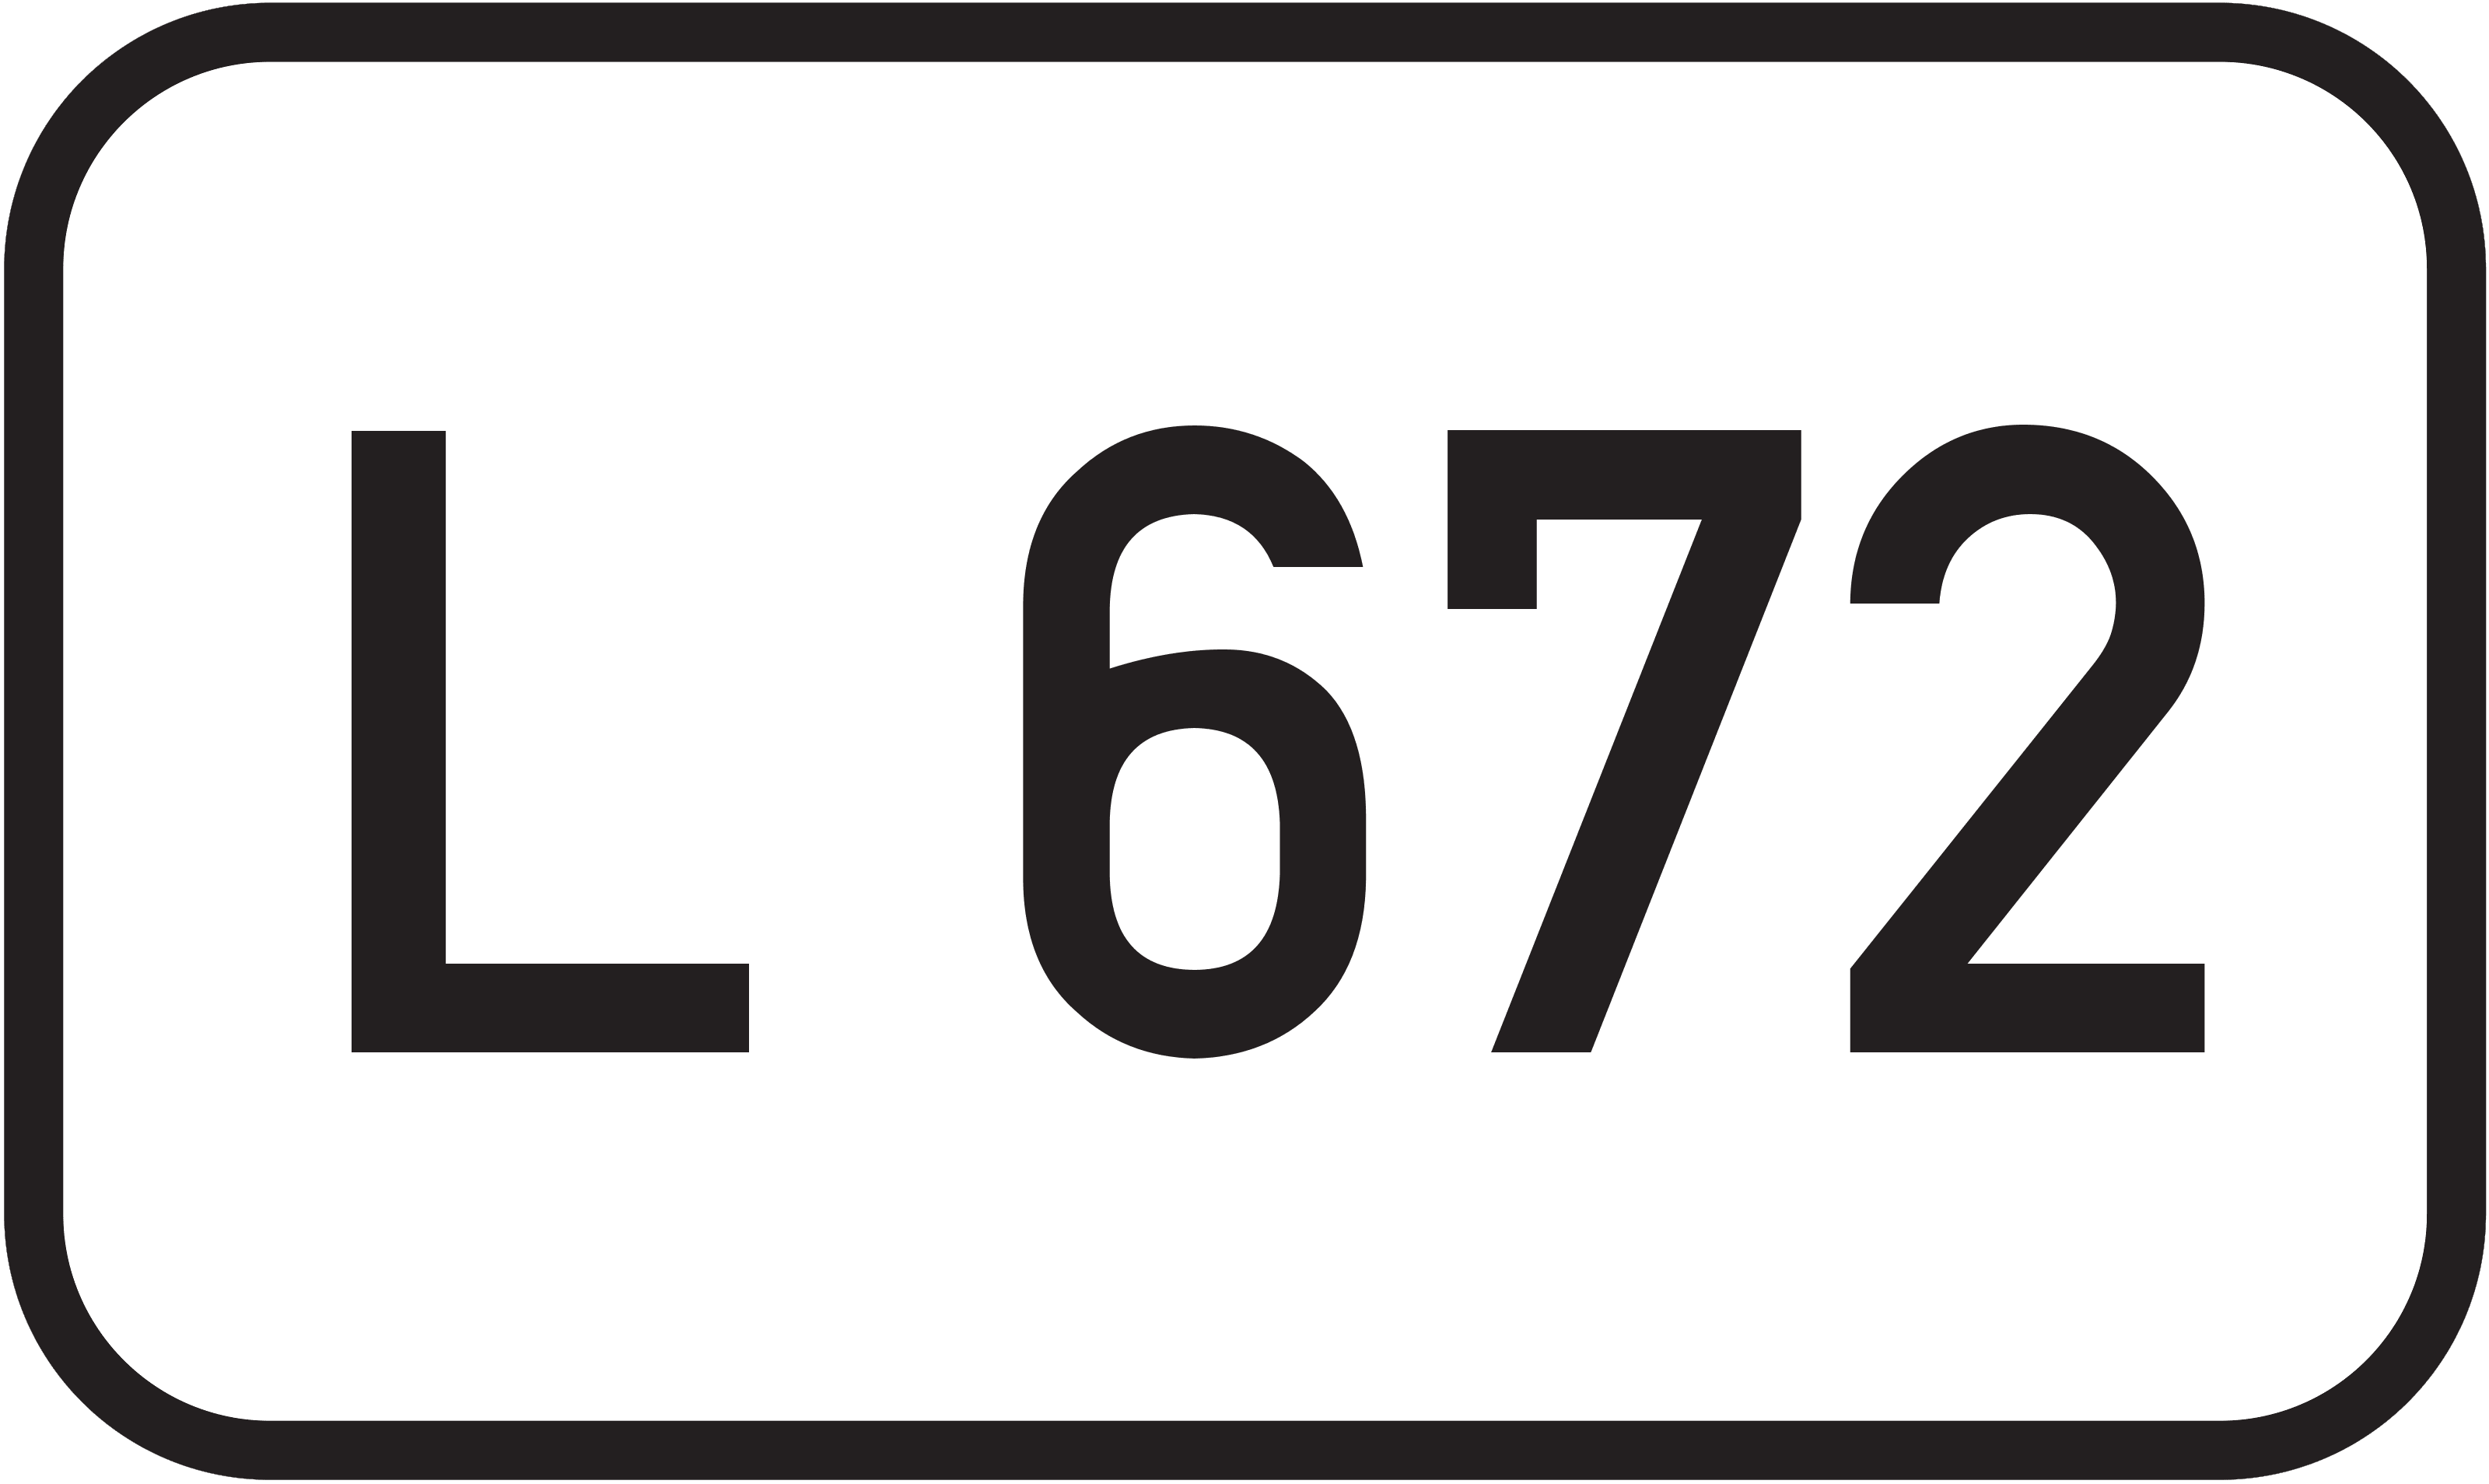 Landesstraße L 672